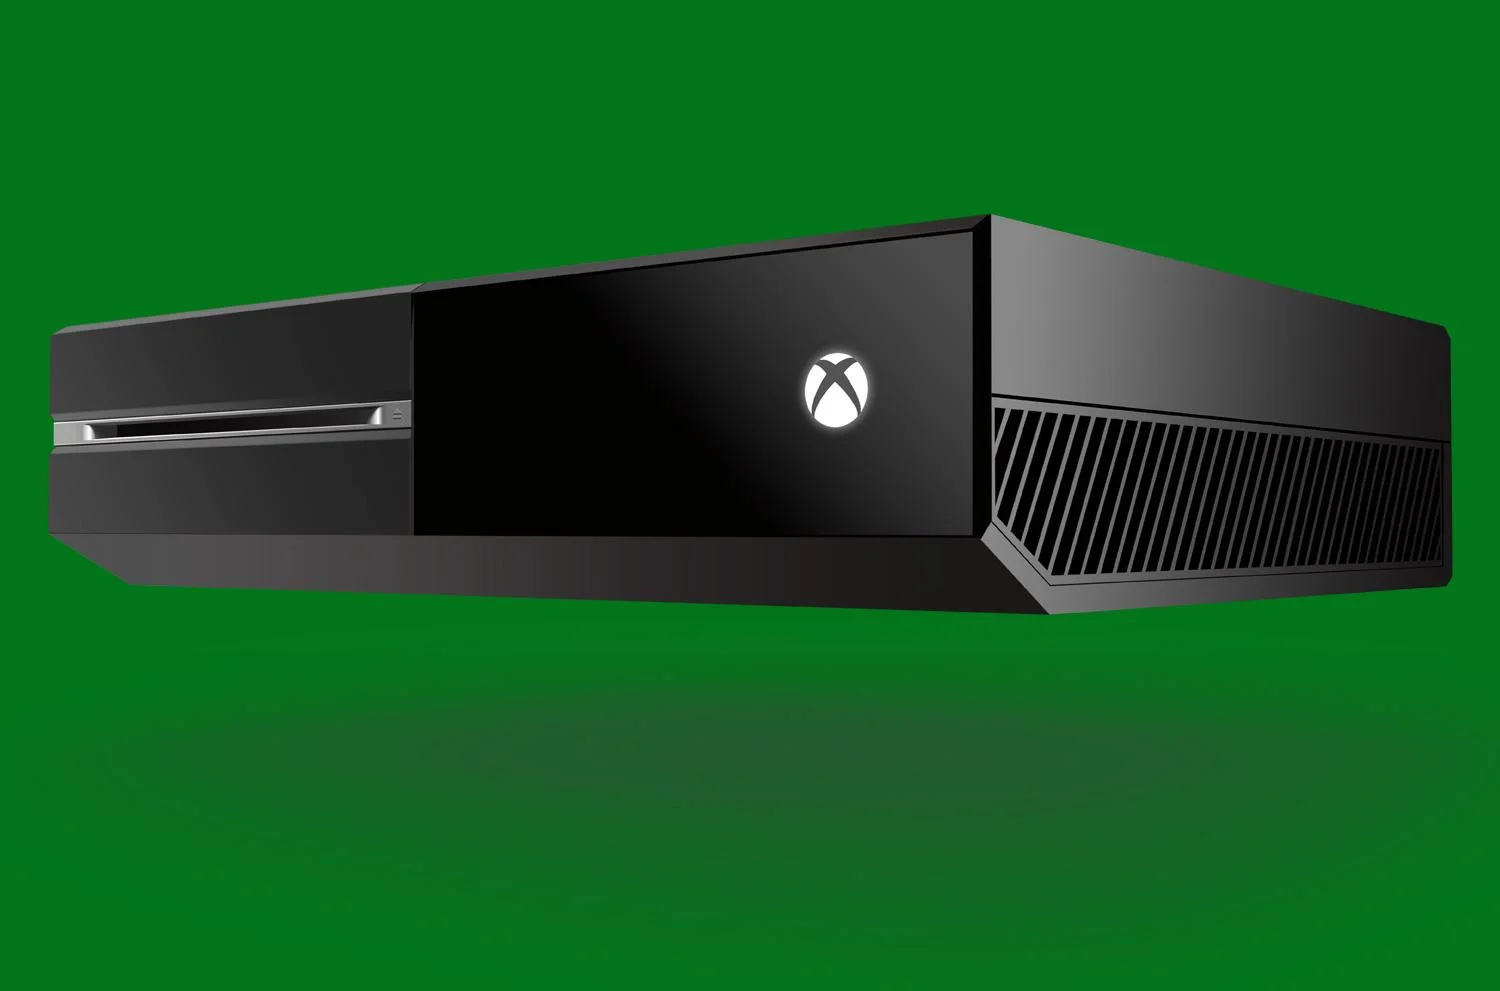 Фотографии демо-стендов Xbox One появились в сети - изображение обложка